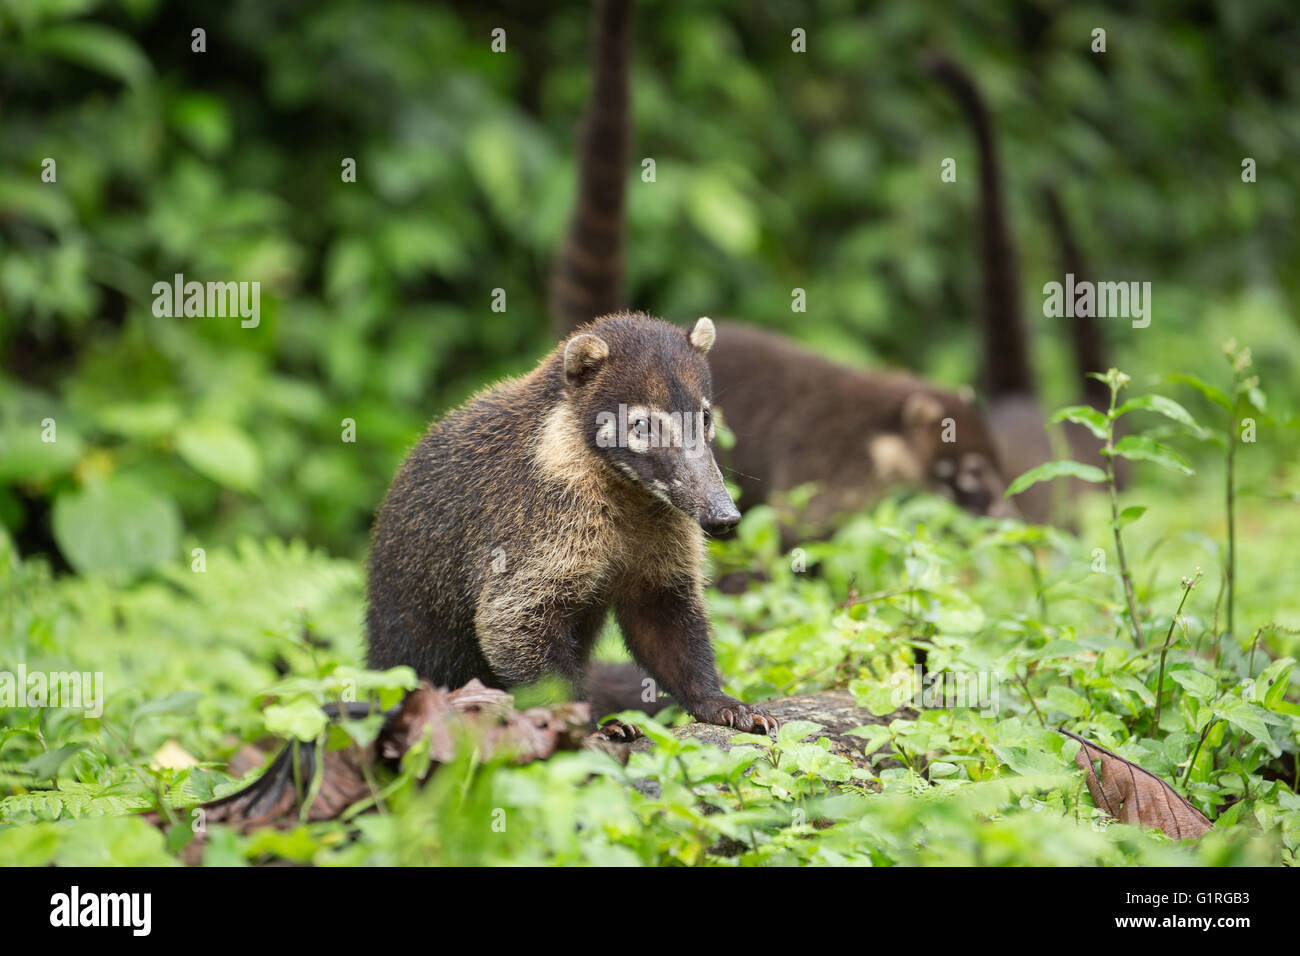 View of the wild Coati - Wildlife Stock Photo